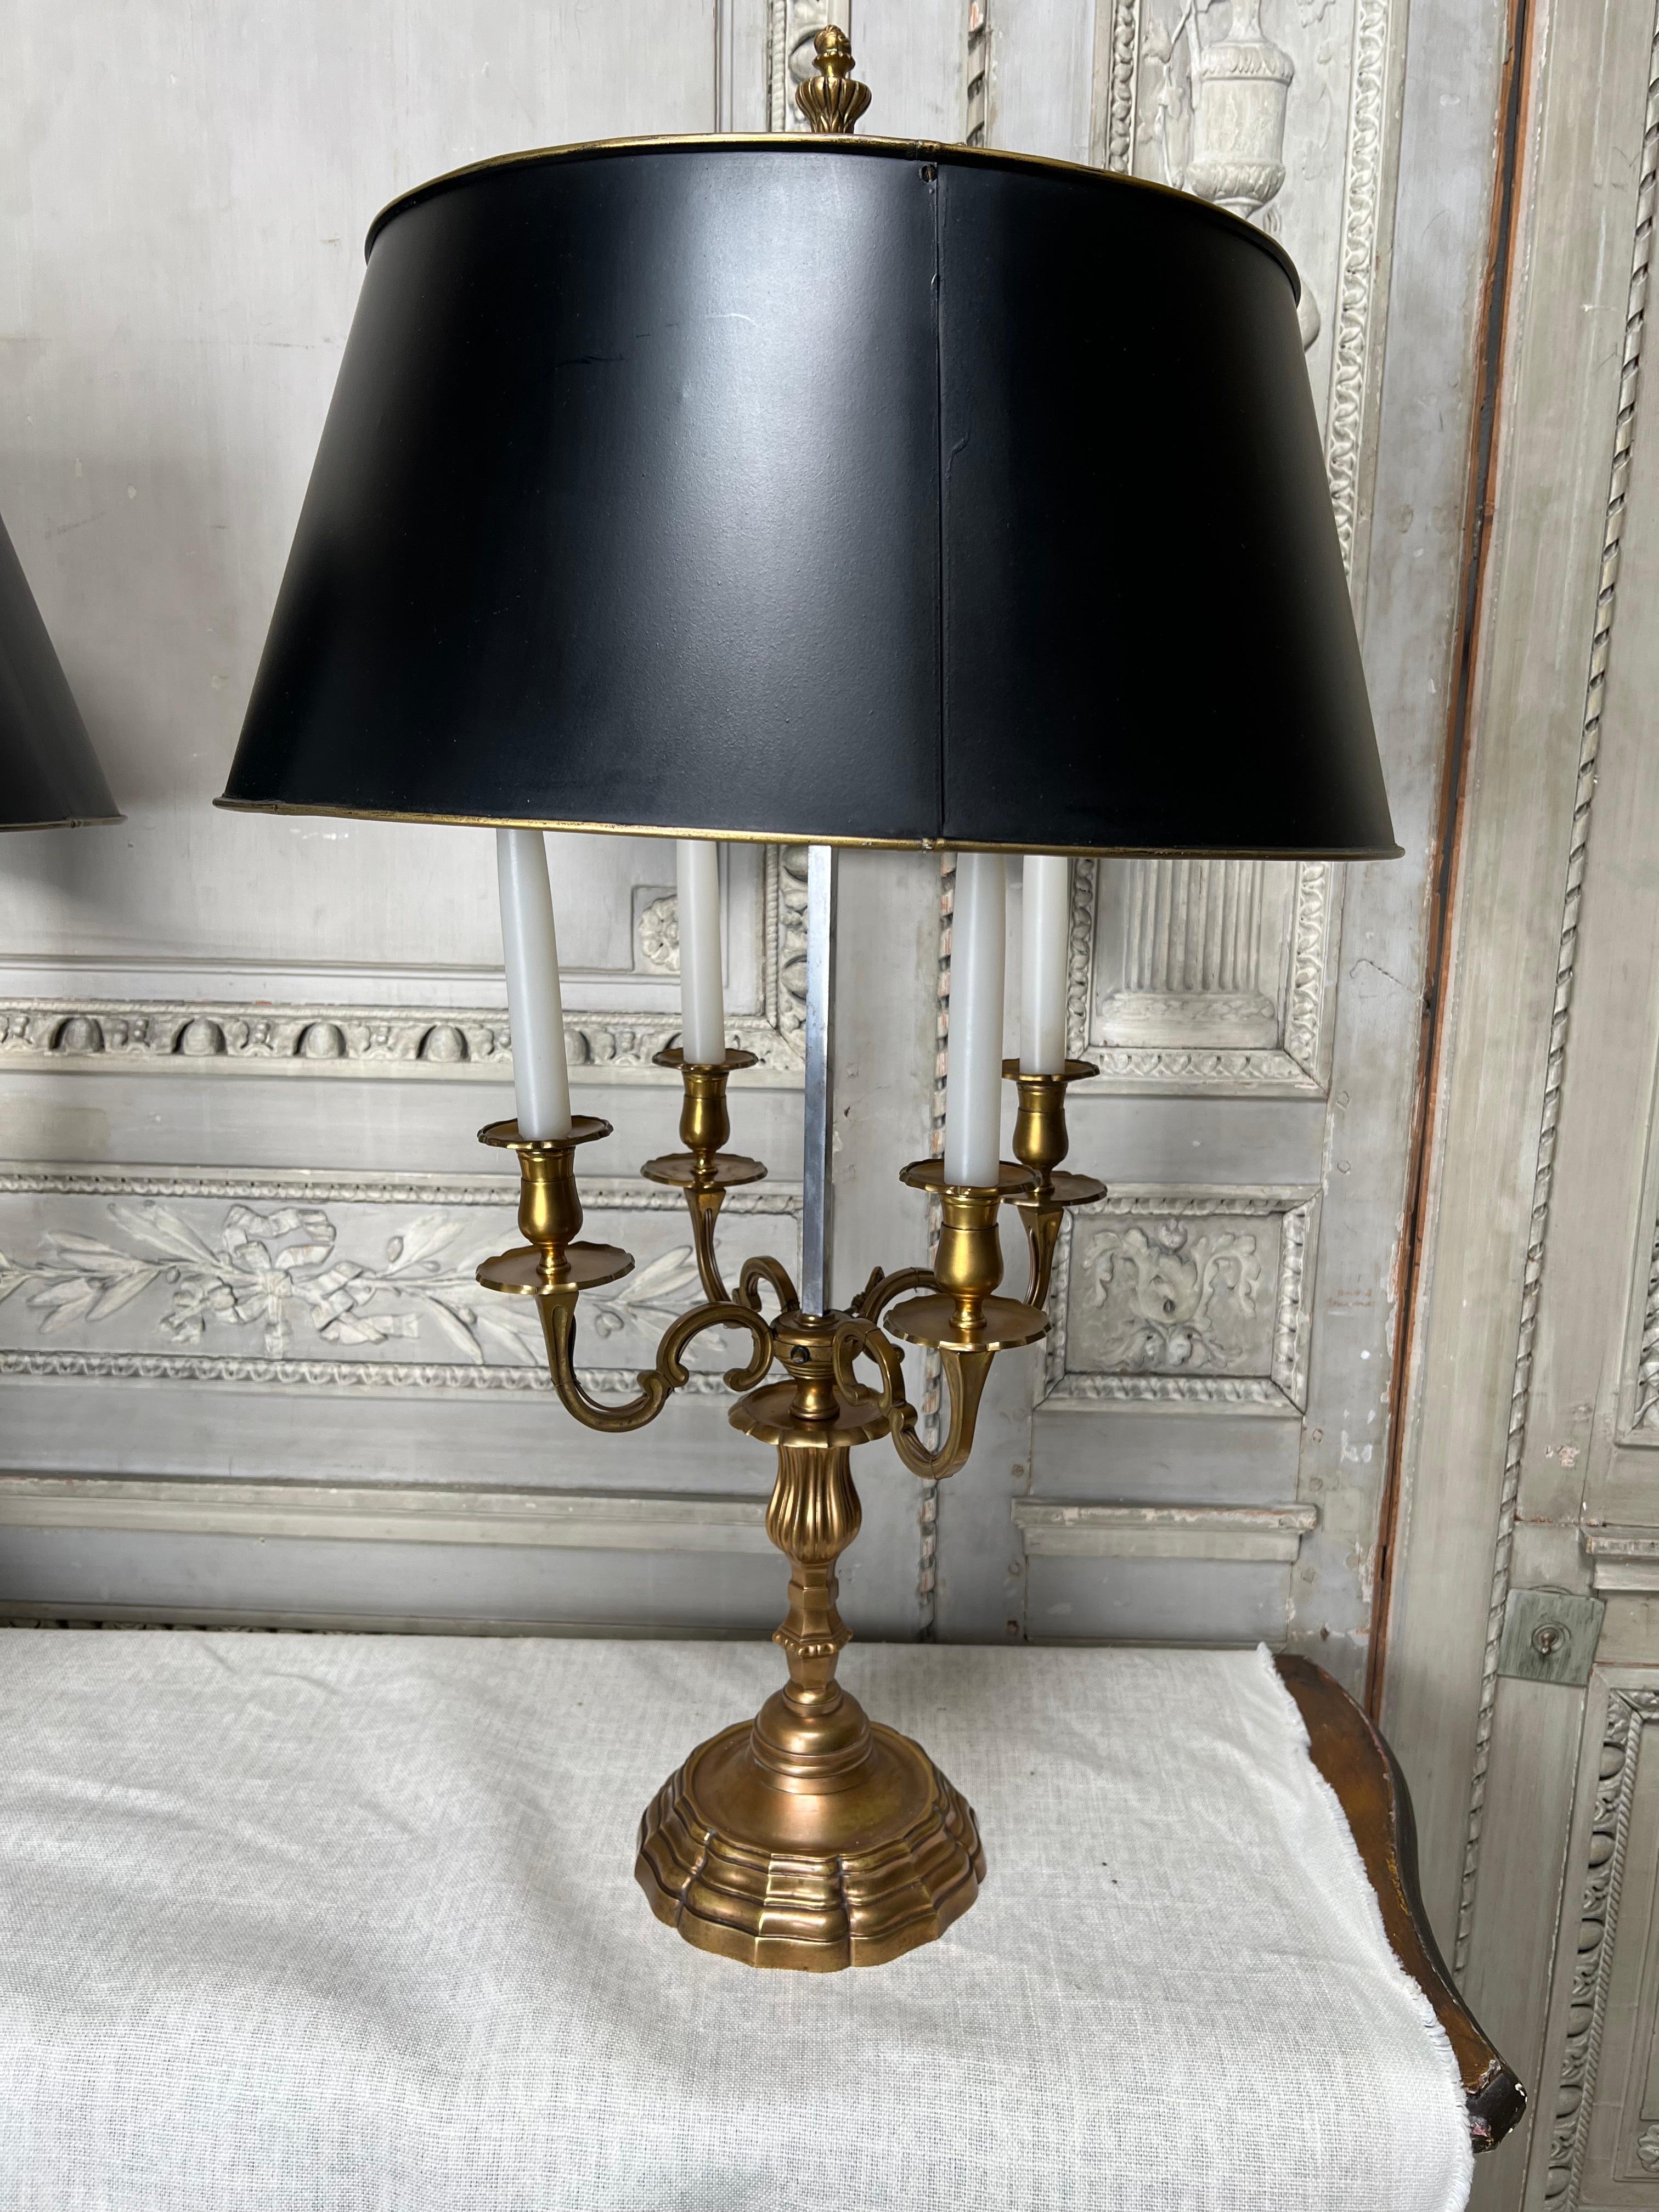 Une très grande paire de lampes bouillotte de style néoclassique français avec des abat-jour réglables en tole peinte en noir.  Ces lampes raffinées sont très décoratives et fonctionnelles.  
Ils ne sont actuellement pas câblés mais peuvent l'être